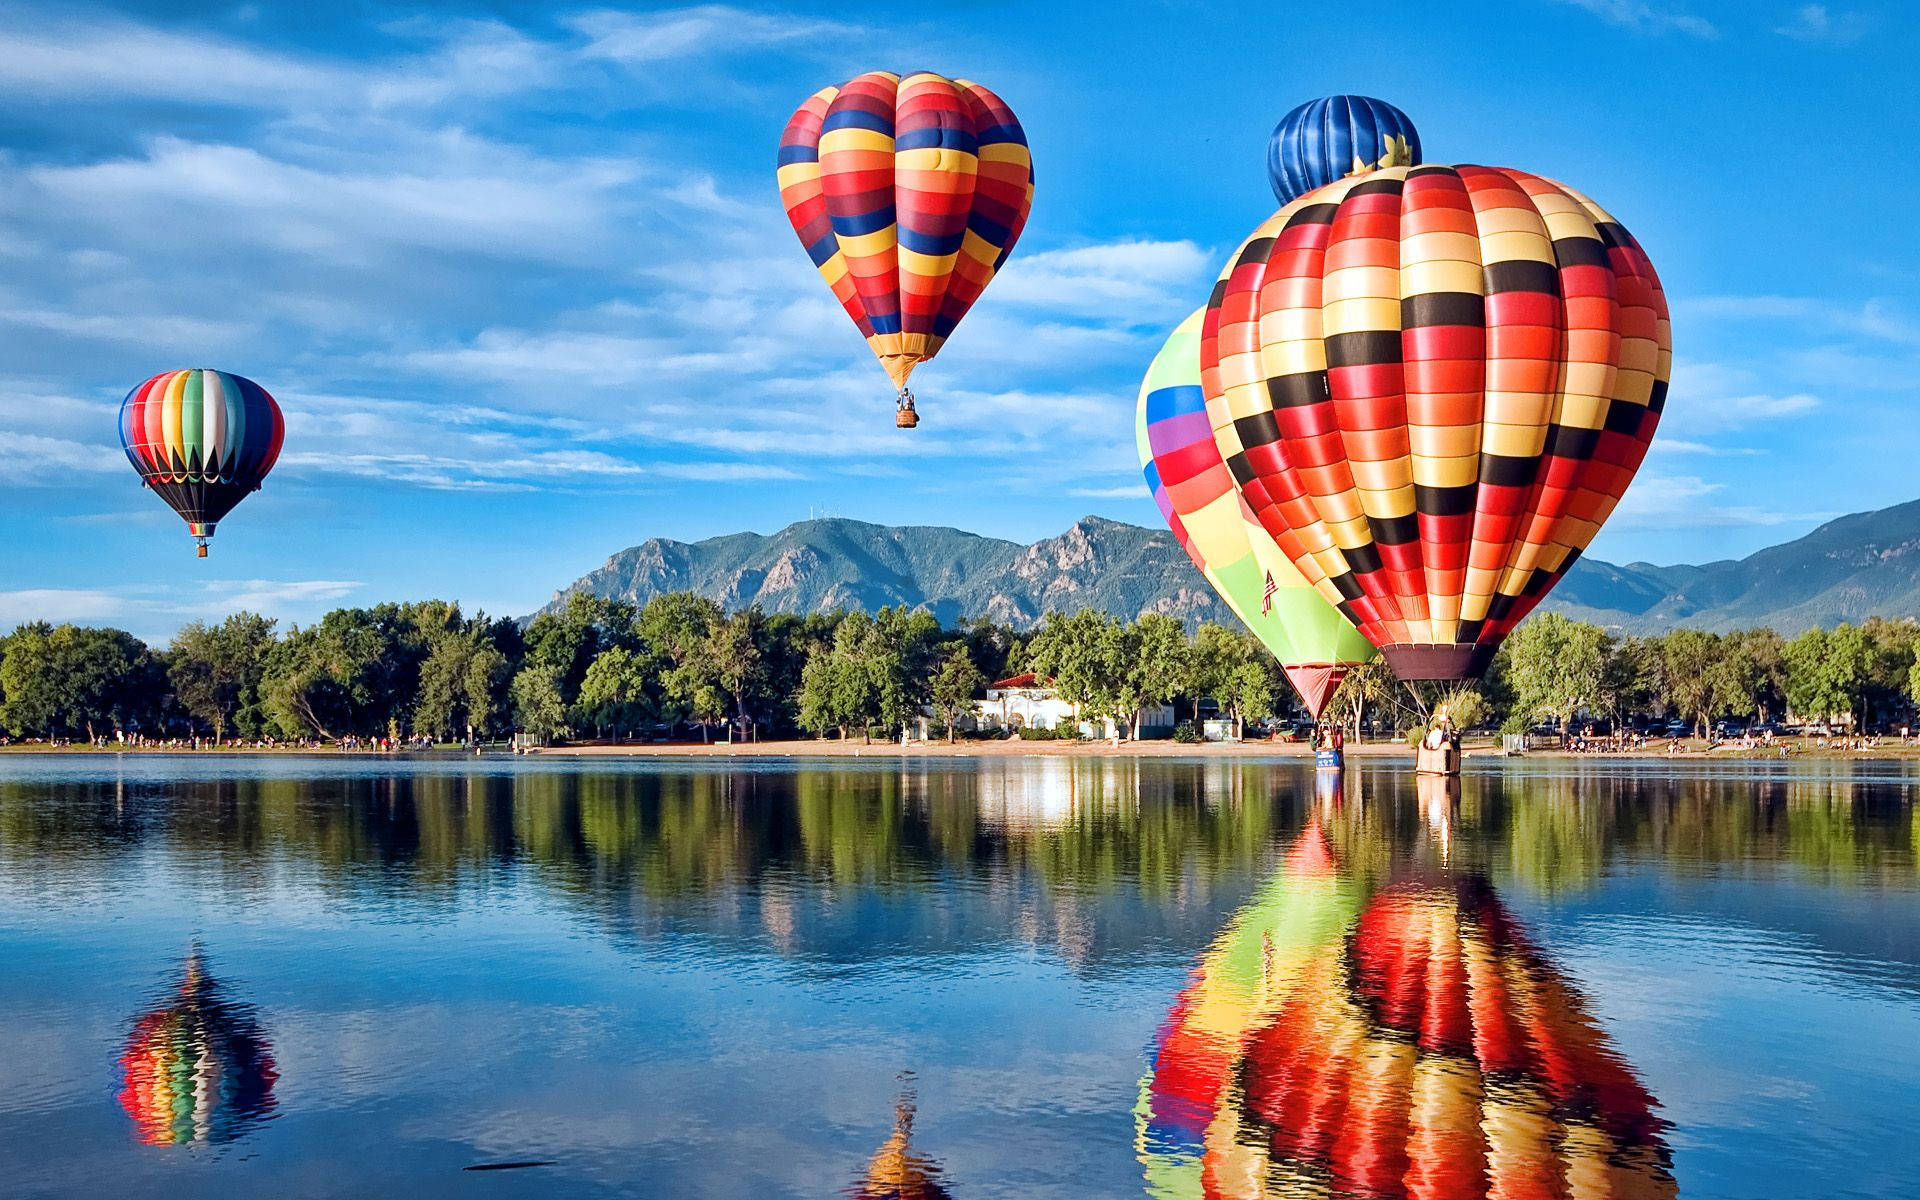 Travel Hd Hot Air Balloons On Lake Wallpaper